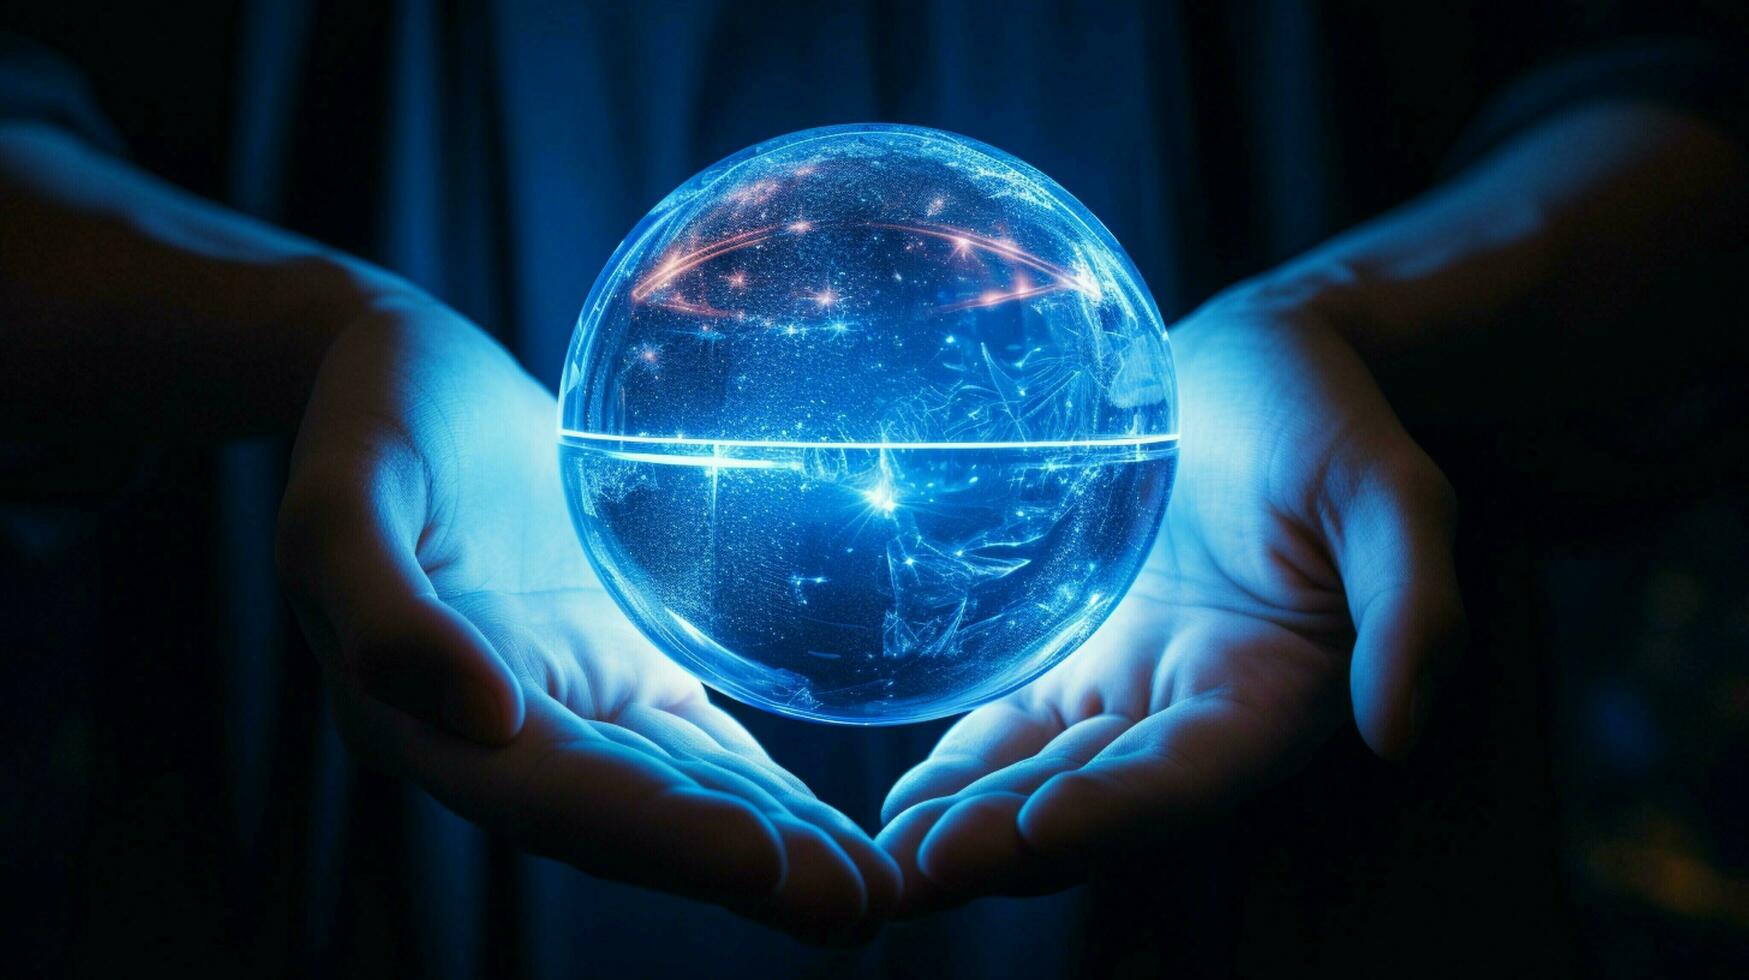 brilhando azul esfera mantido de humano mão foto